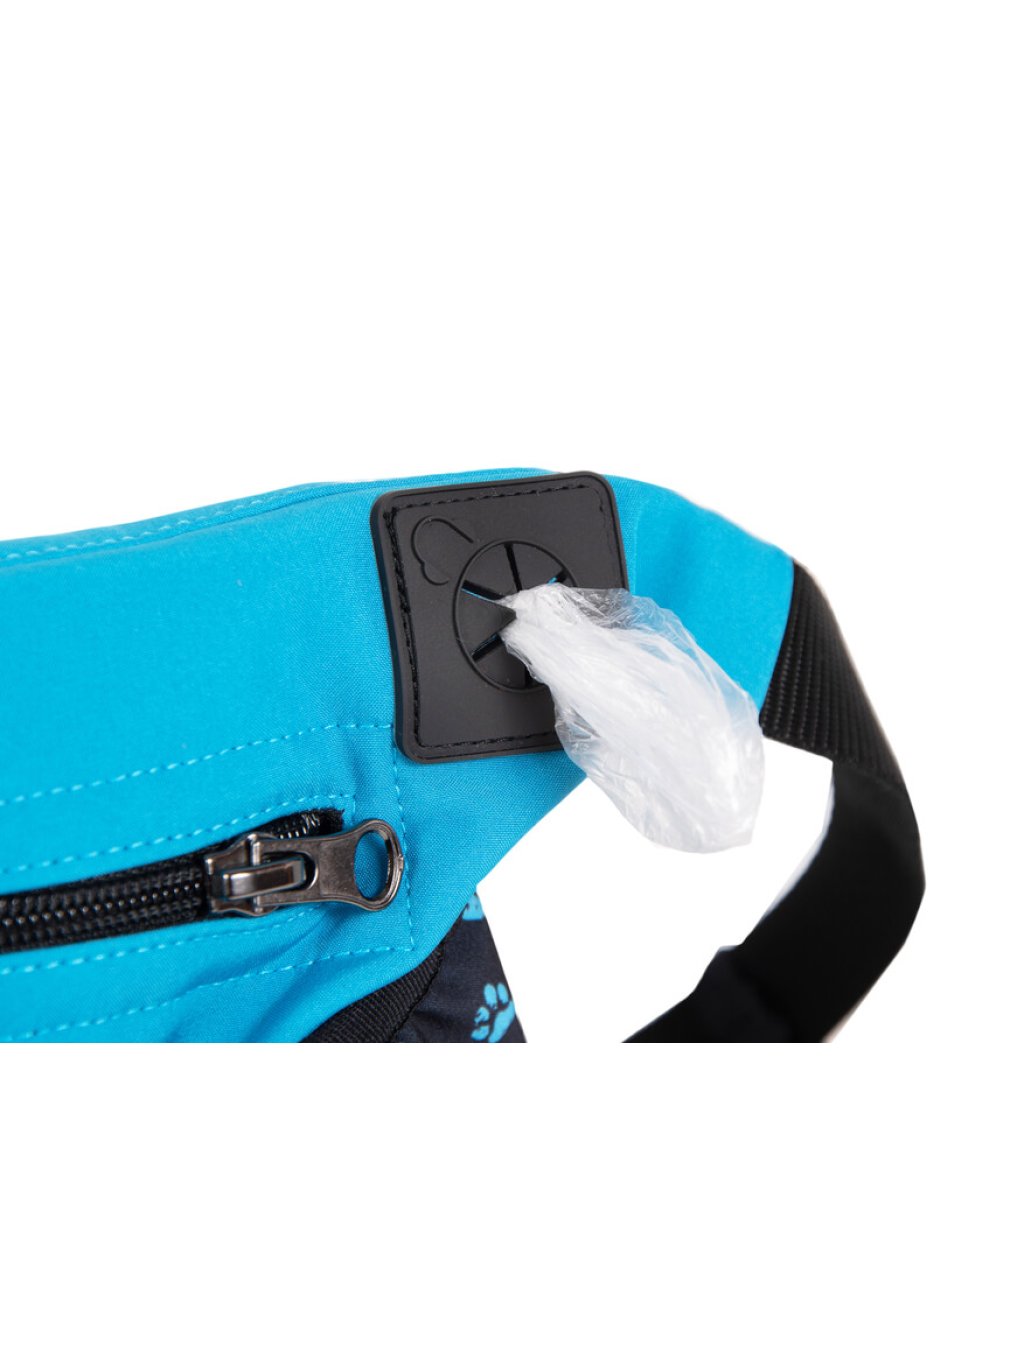 Dog training treat pouch XL Aqua